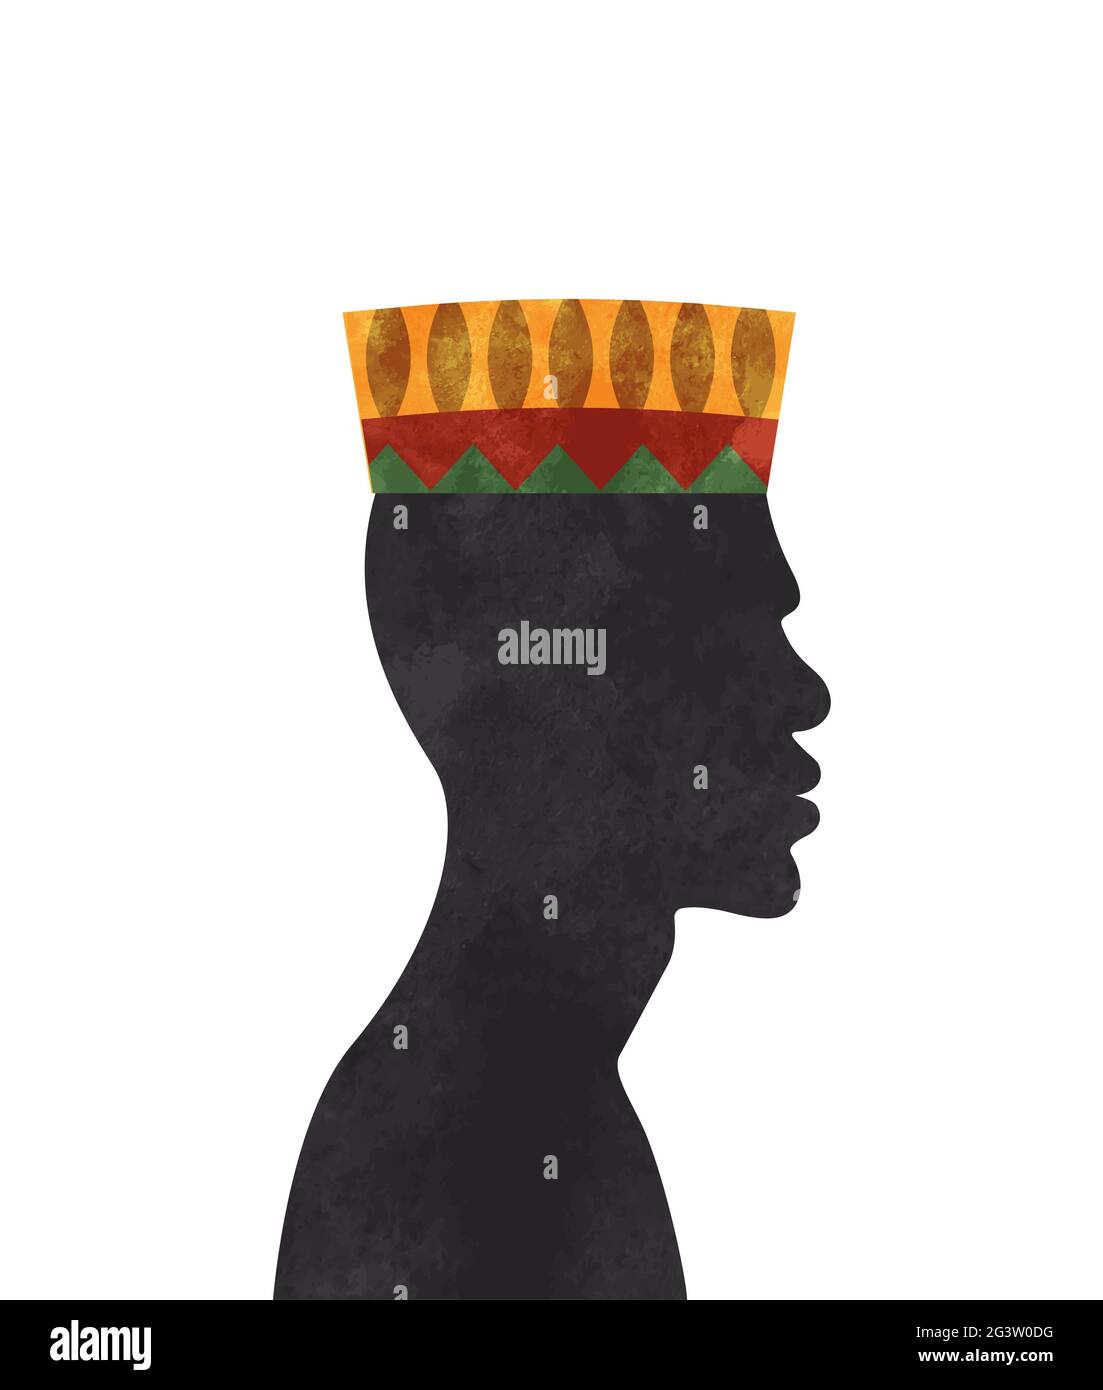 Homme de culture africaine avec chapeau kufi traditionnel dans la texture de peinture aquarelle. Silhouette de garçon afrique noire sur fond isolé. Illustration de Vecteur